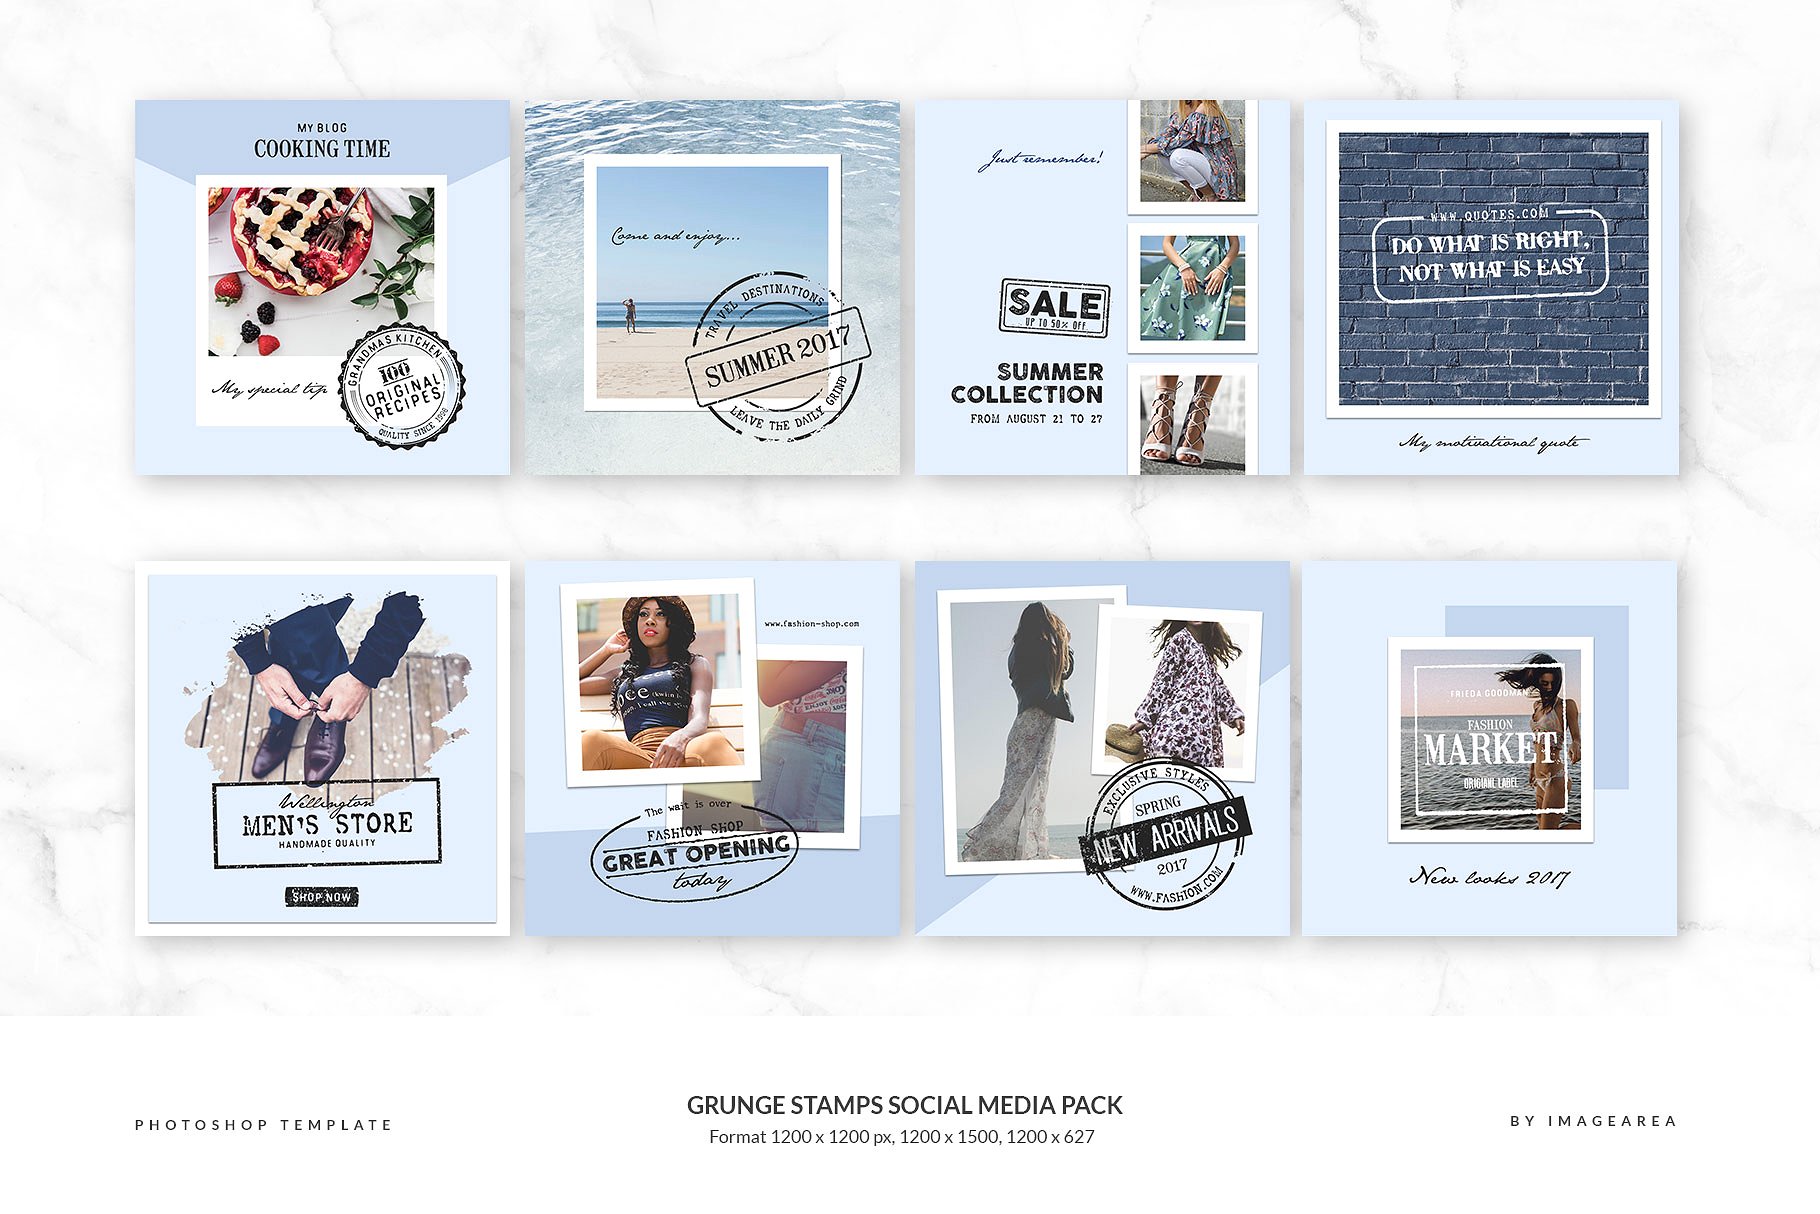 社交媒体、博客插图设计素材包 Grunge stamps Social Media Pack插图(1)